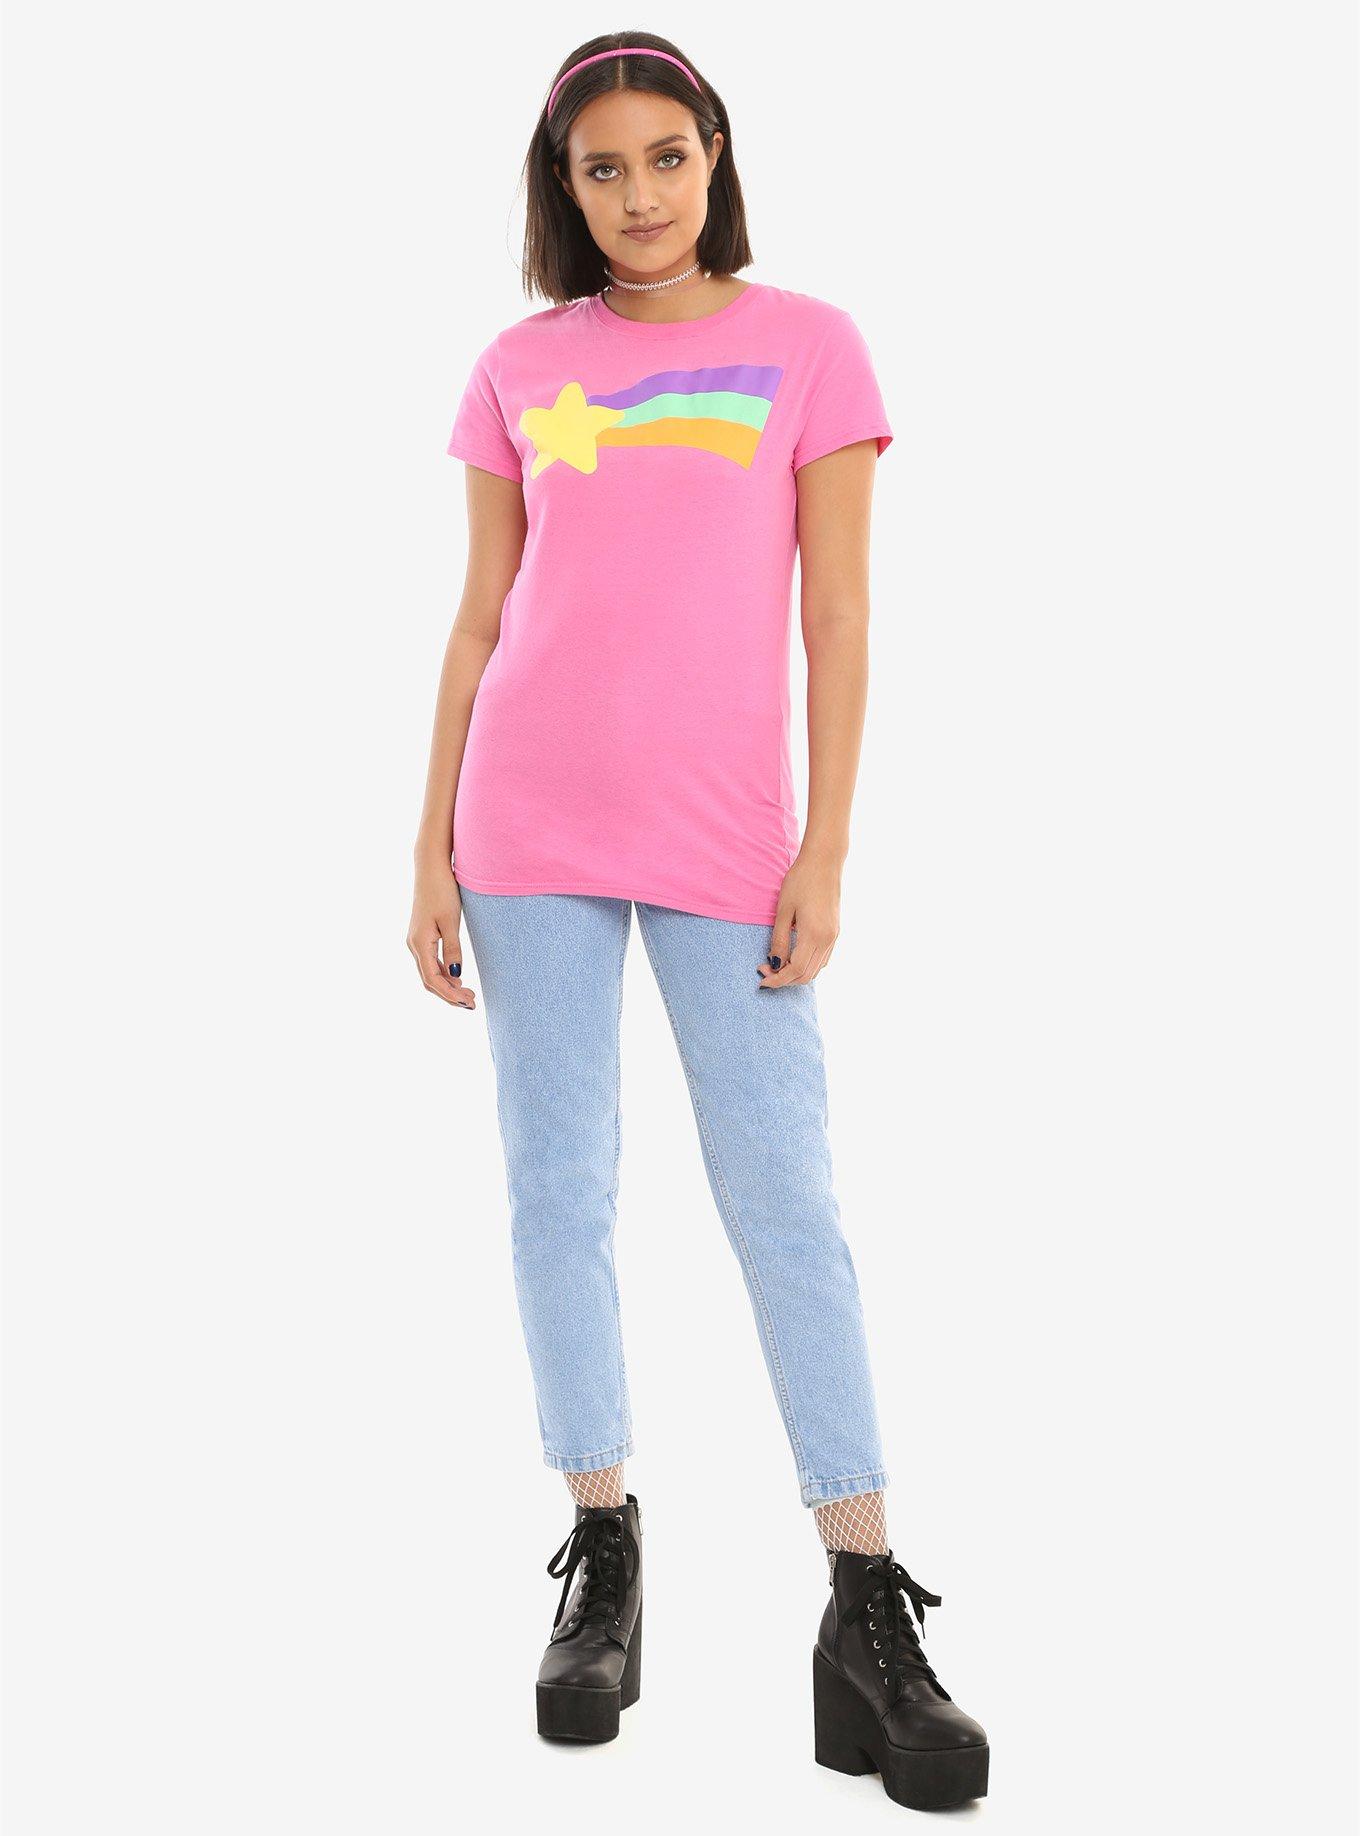 Disney Gravity Falls Mabel Cosplay Girls T-Shirt, PINK, alternate